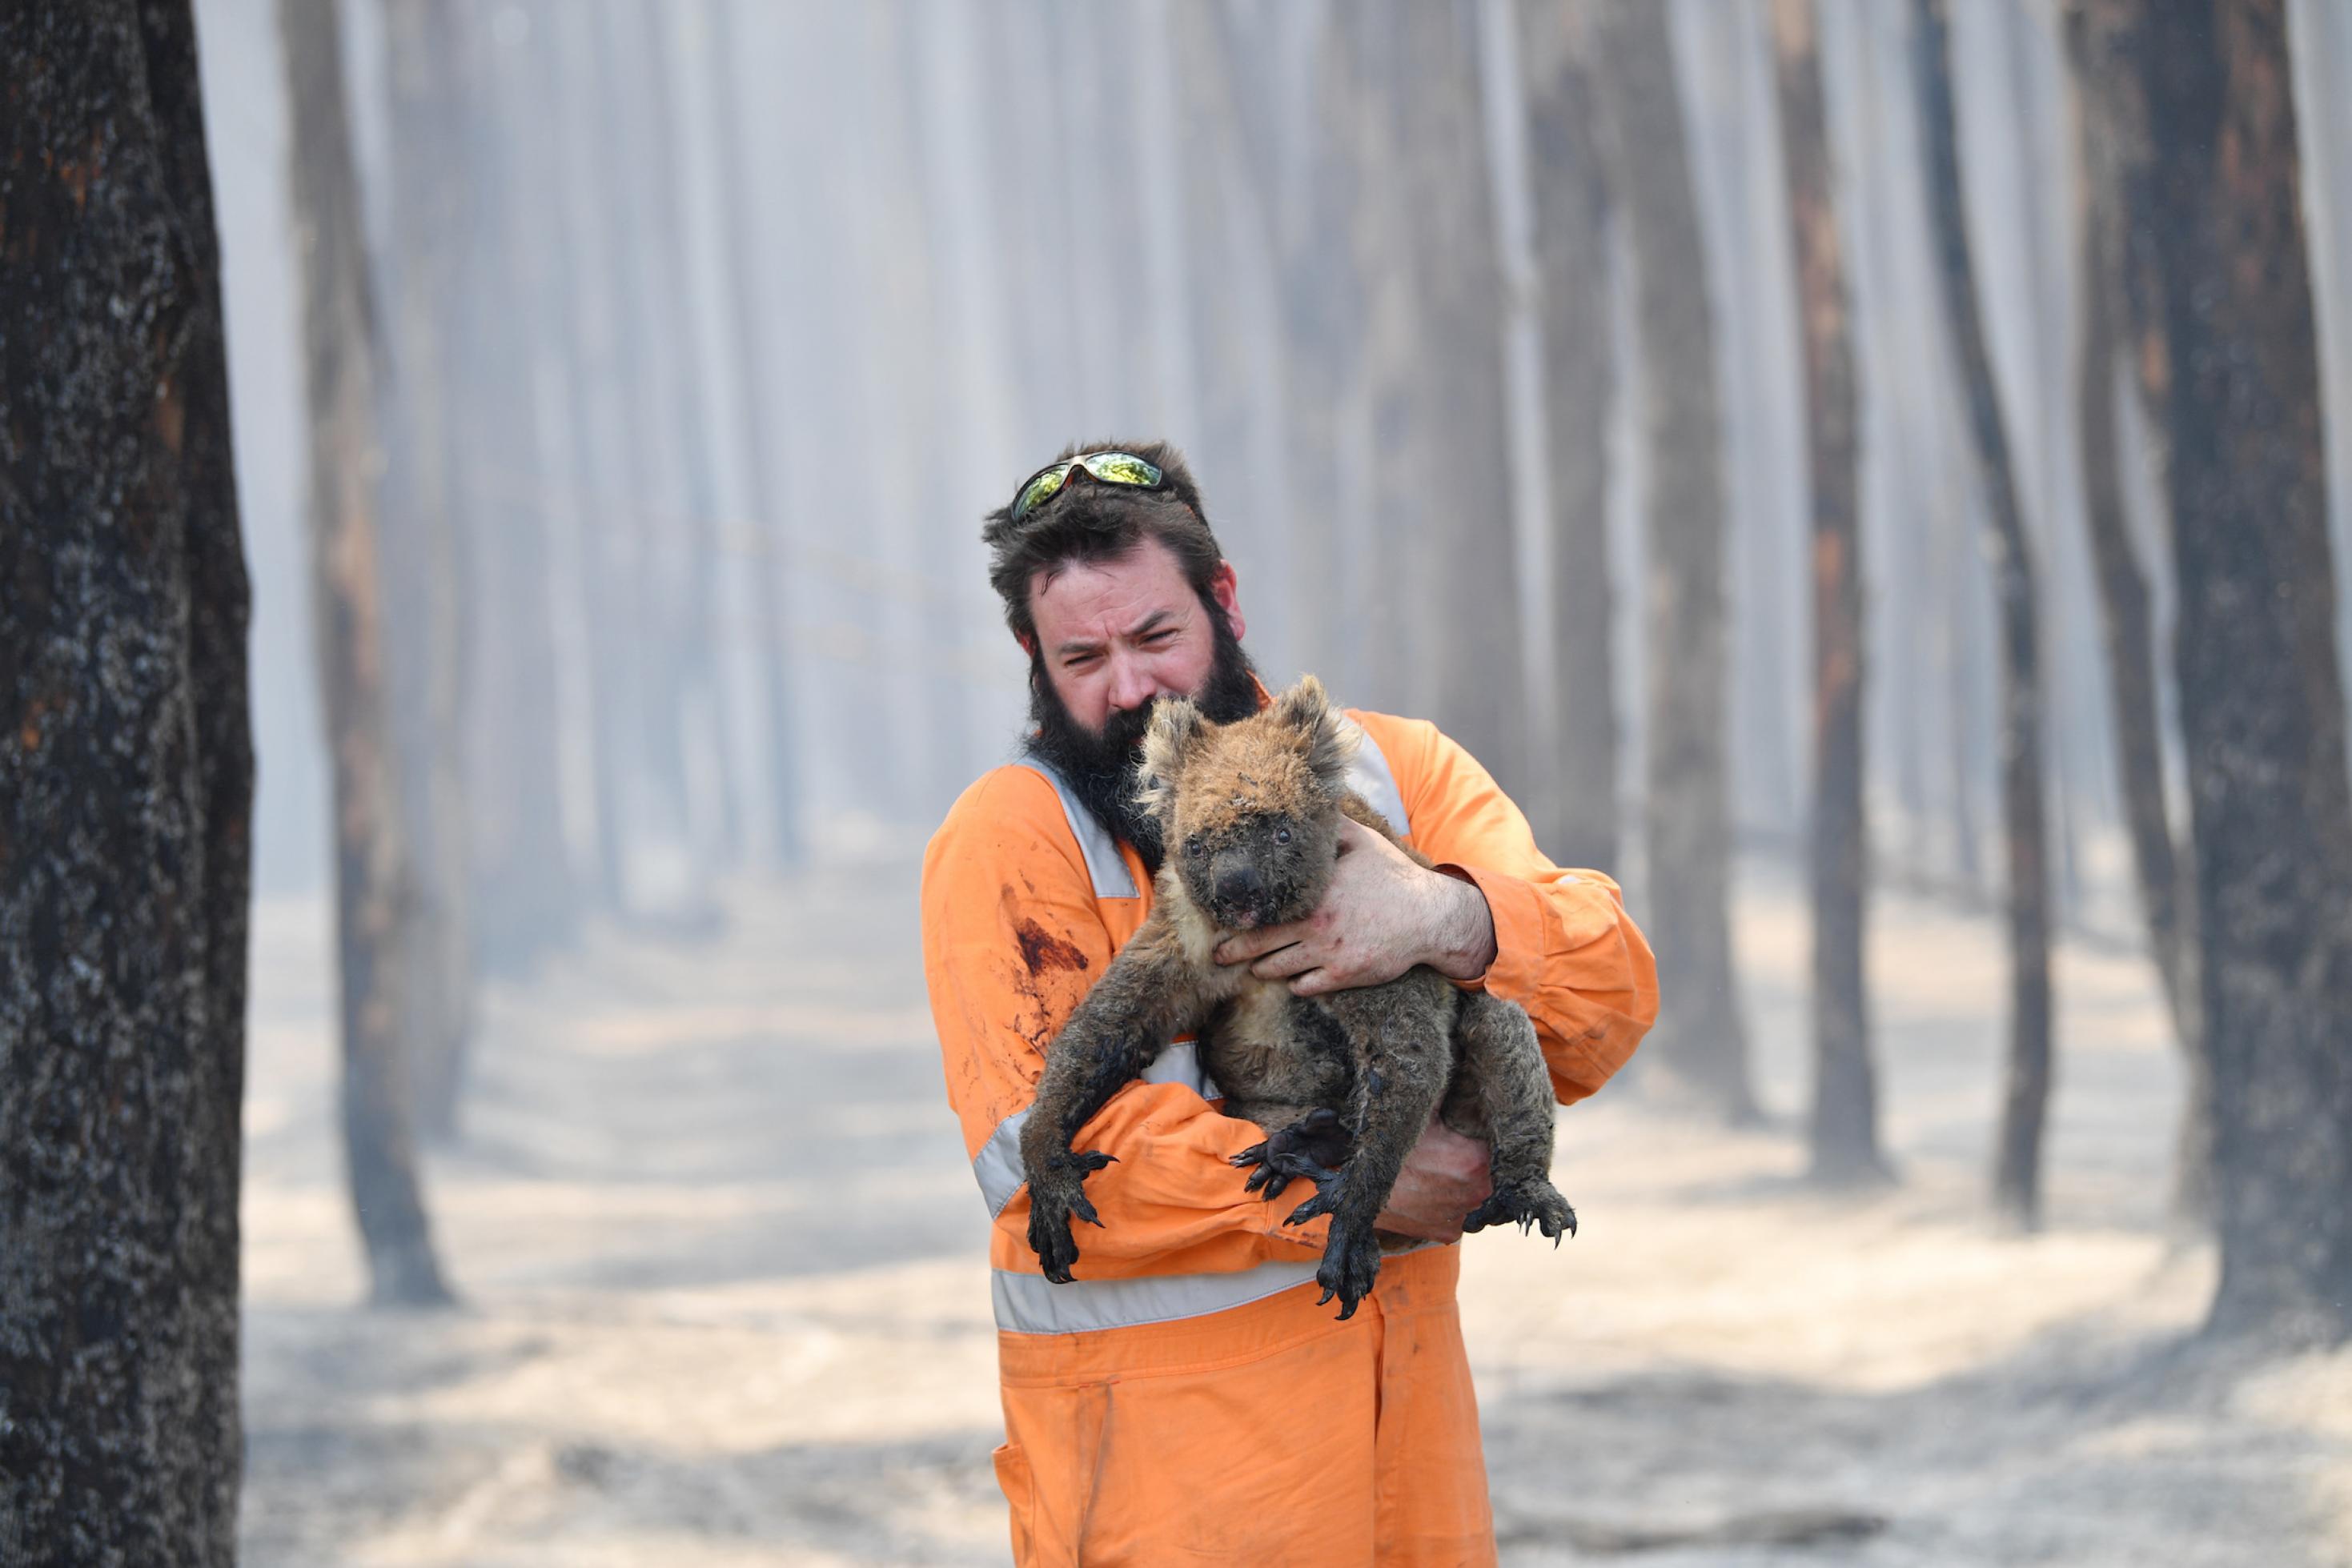 Das Bild zeigt einen bärtigen Mann inmitten eines komplett abgebrannten Waldes, der einen verletzten Koala in seinen Armen hält und zu retten versucht. Beide wirken verzweifelt.